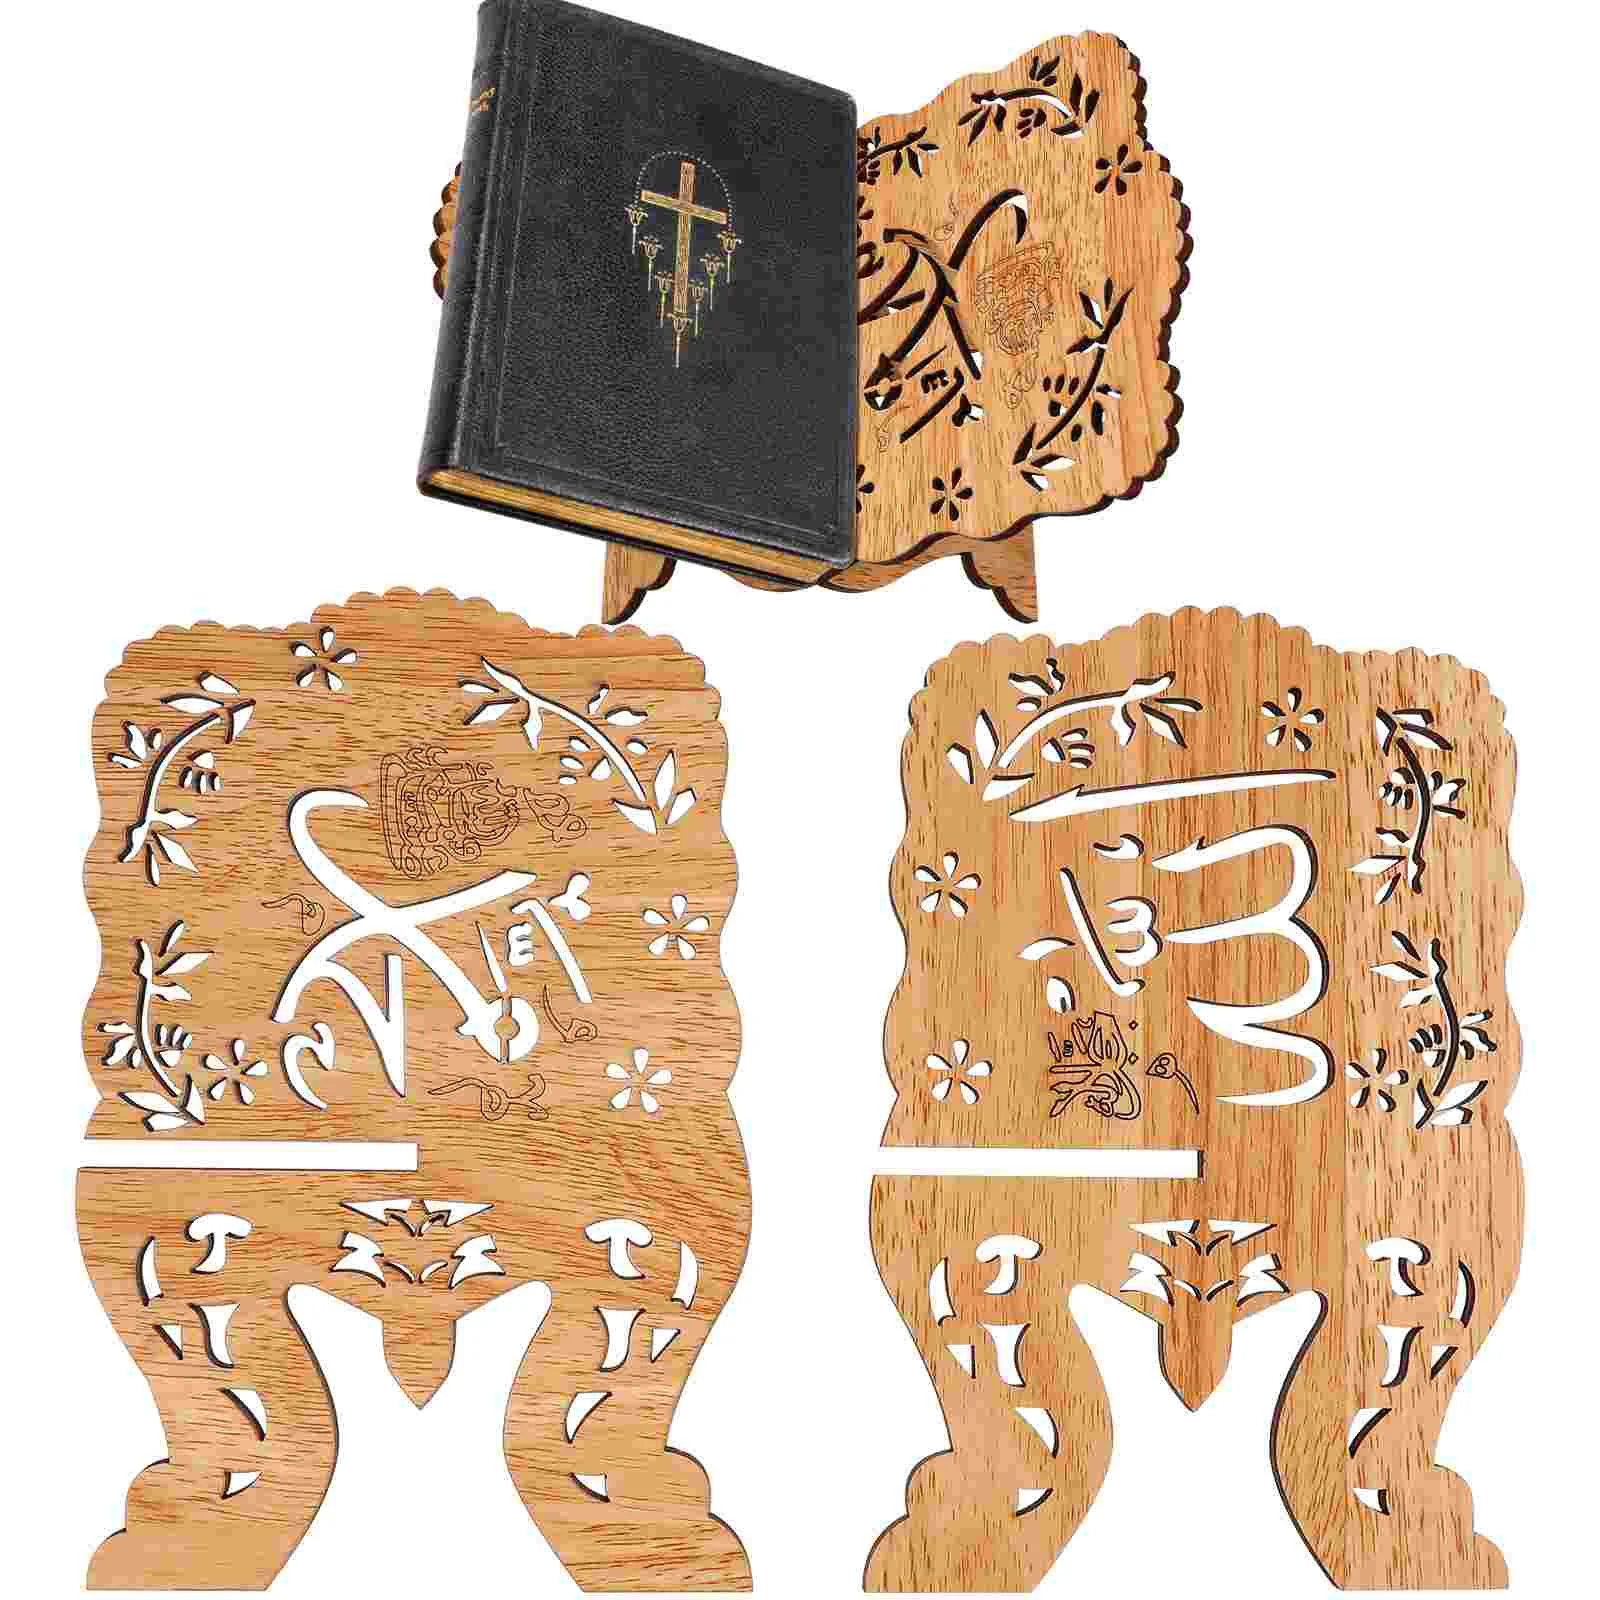 

Деревянная книжная полка, подставка для Библии, деревянная подставка для книг, ИД ислам, Коран, держатель, поперечная рамка, ажурная подставка для книжного мольберта